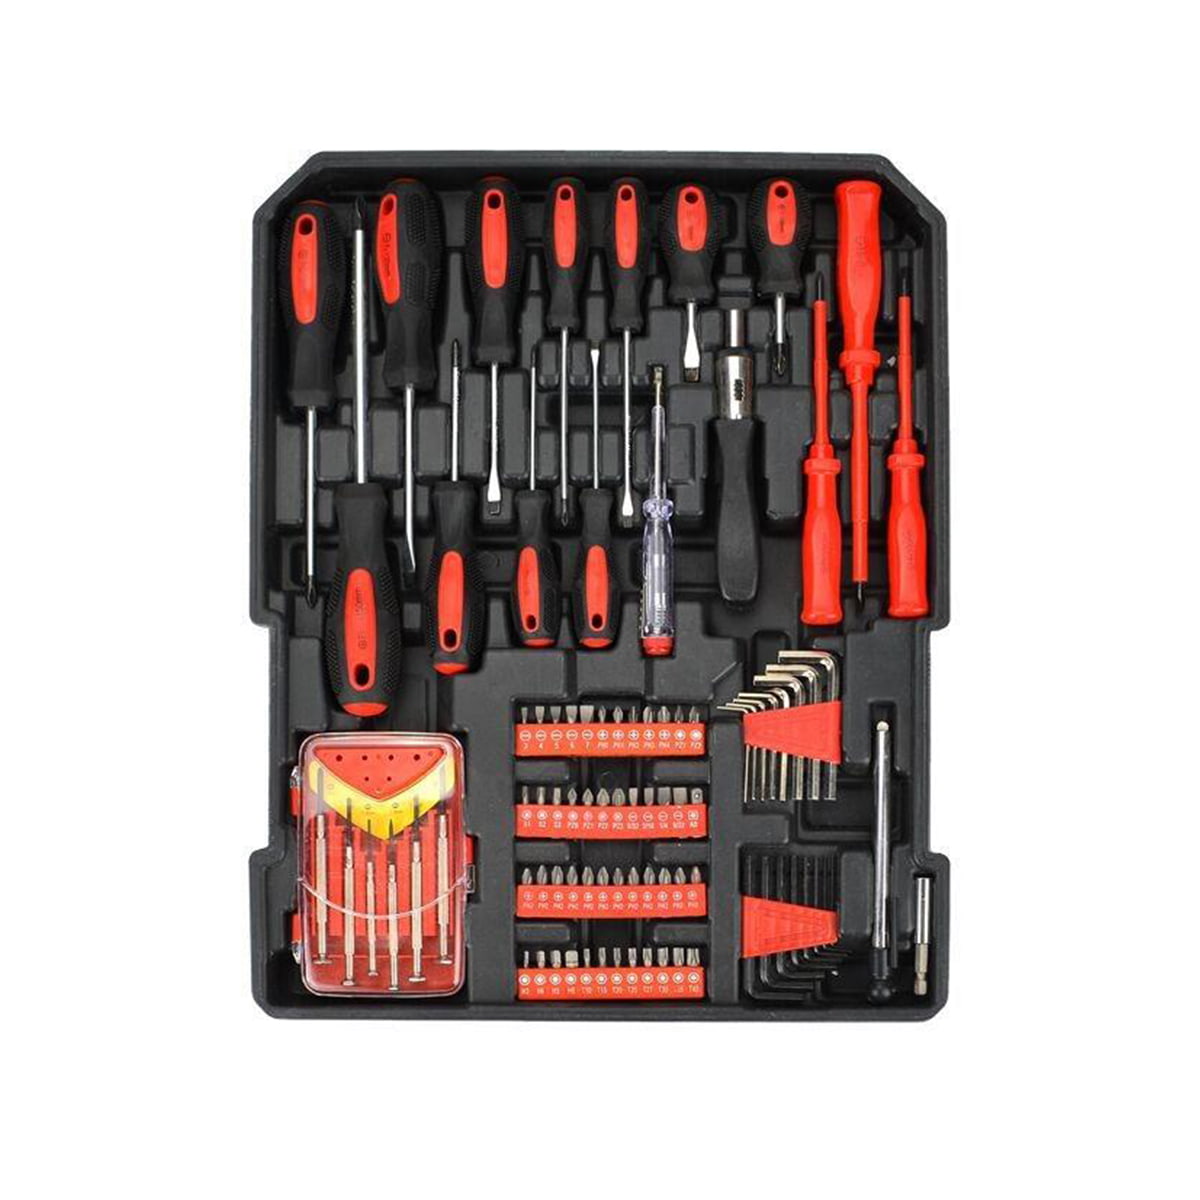 499-teiliges Ferramentas Professional Hardware Automotive Tool Socket Kit de Reparao de Automotive Tools Set